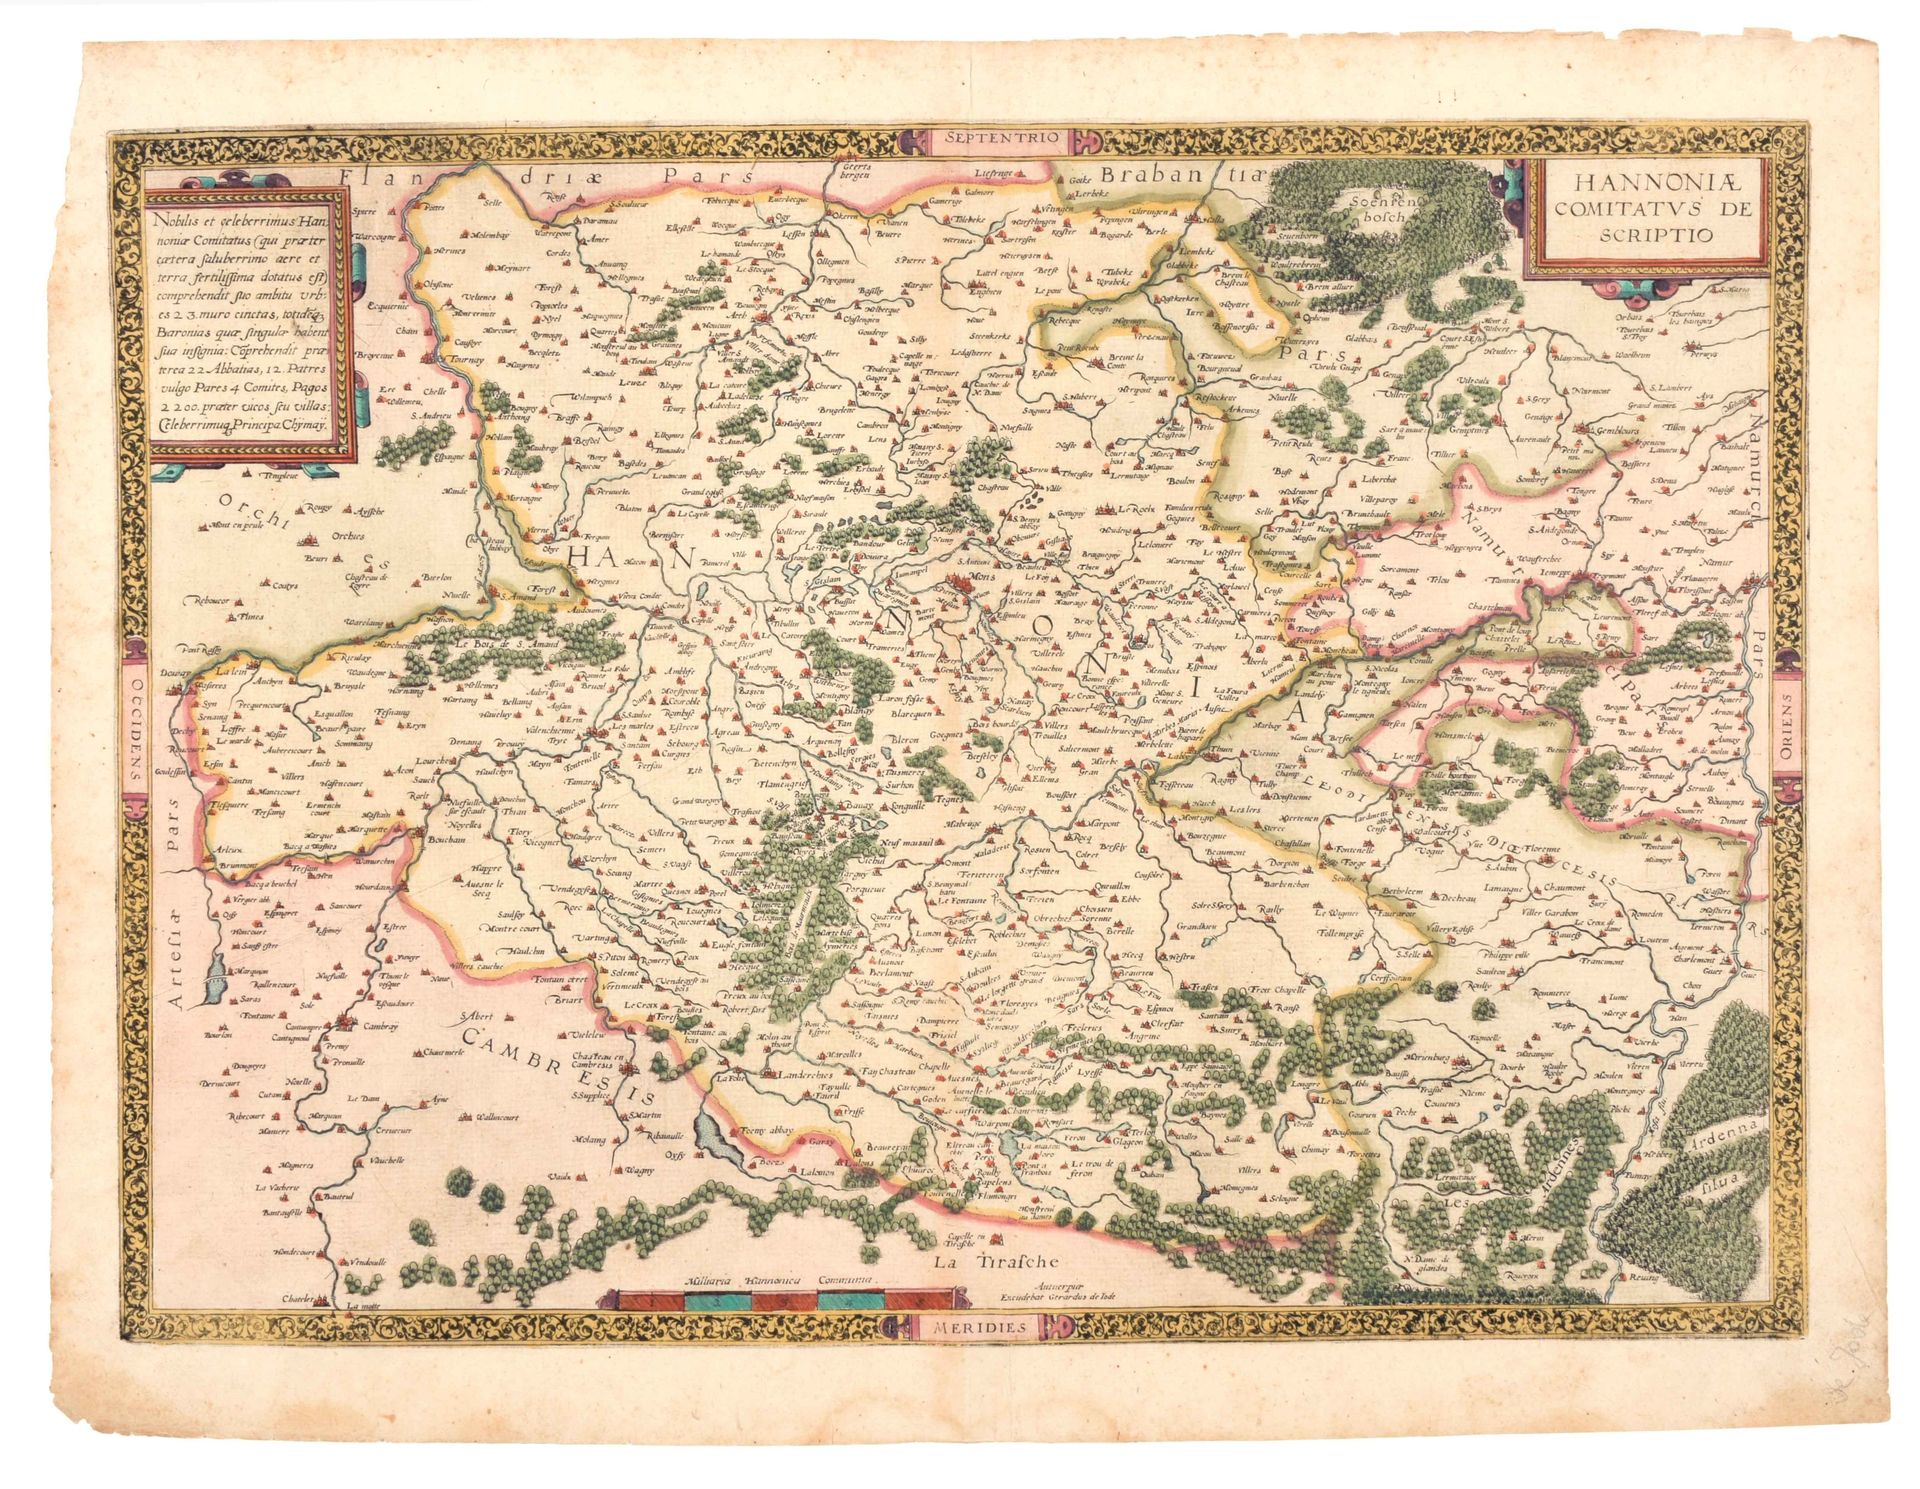 [HAINAUT] Hanoniae comitatus descriptio

Alte Karte (36 x 51 cm) in Farbe von Ge&hellip;